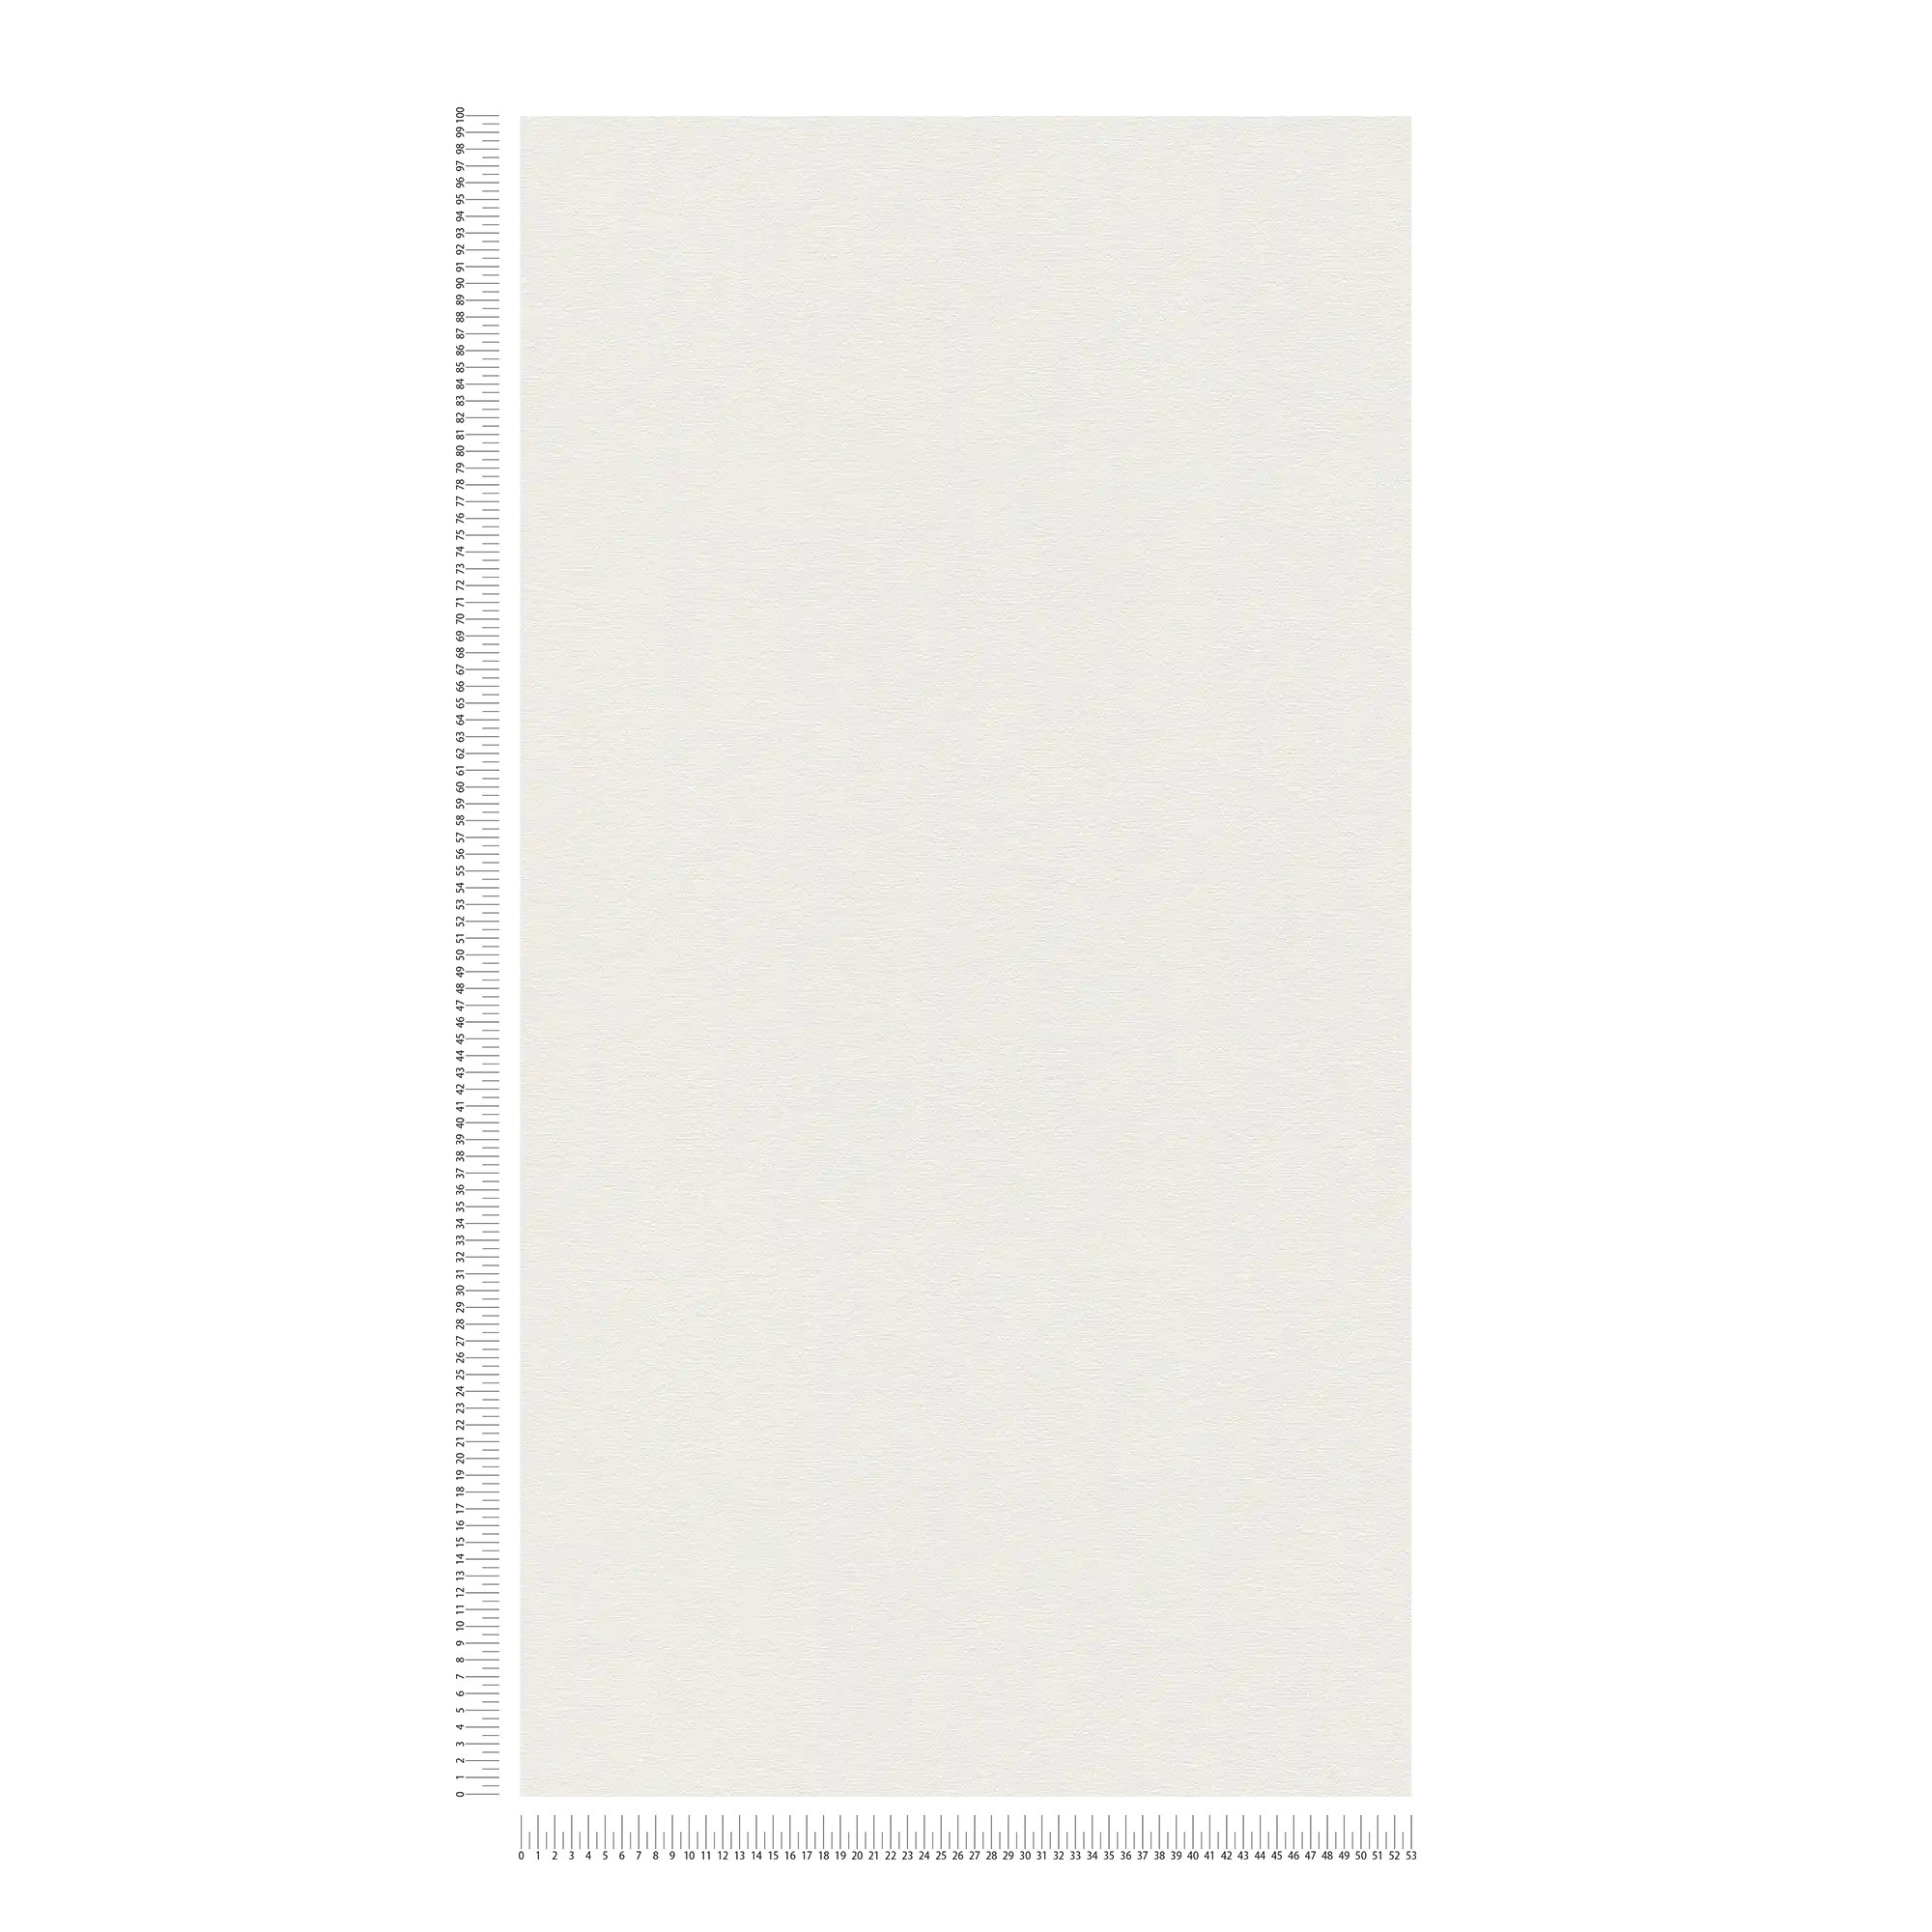             Carta da parati unitaria leggermente strutturata in look opaco - bianco, crema
        